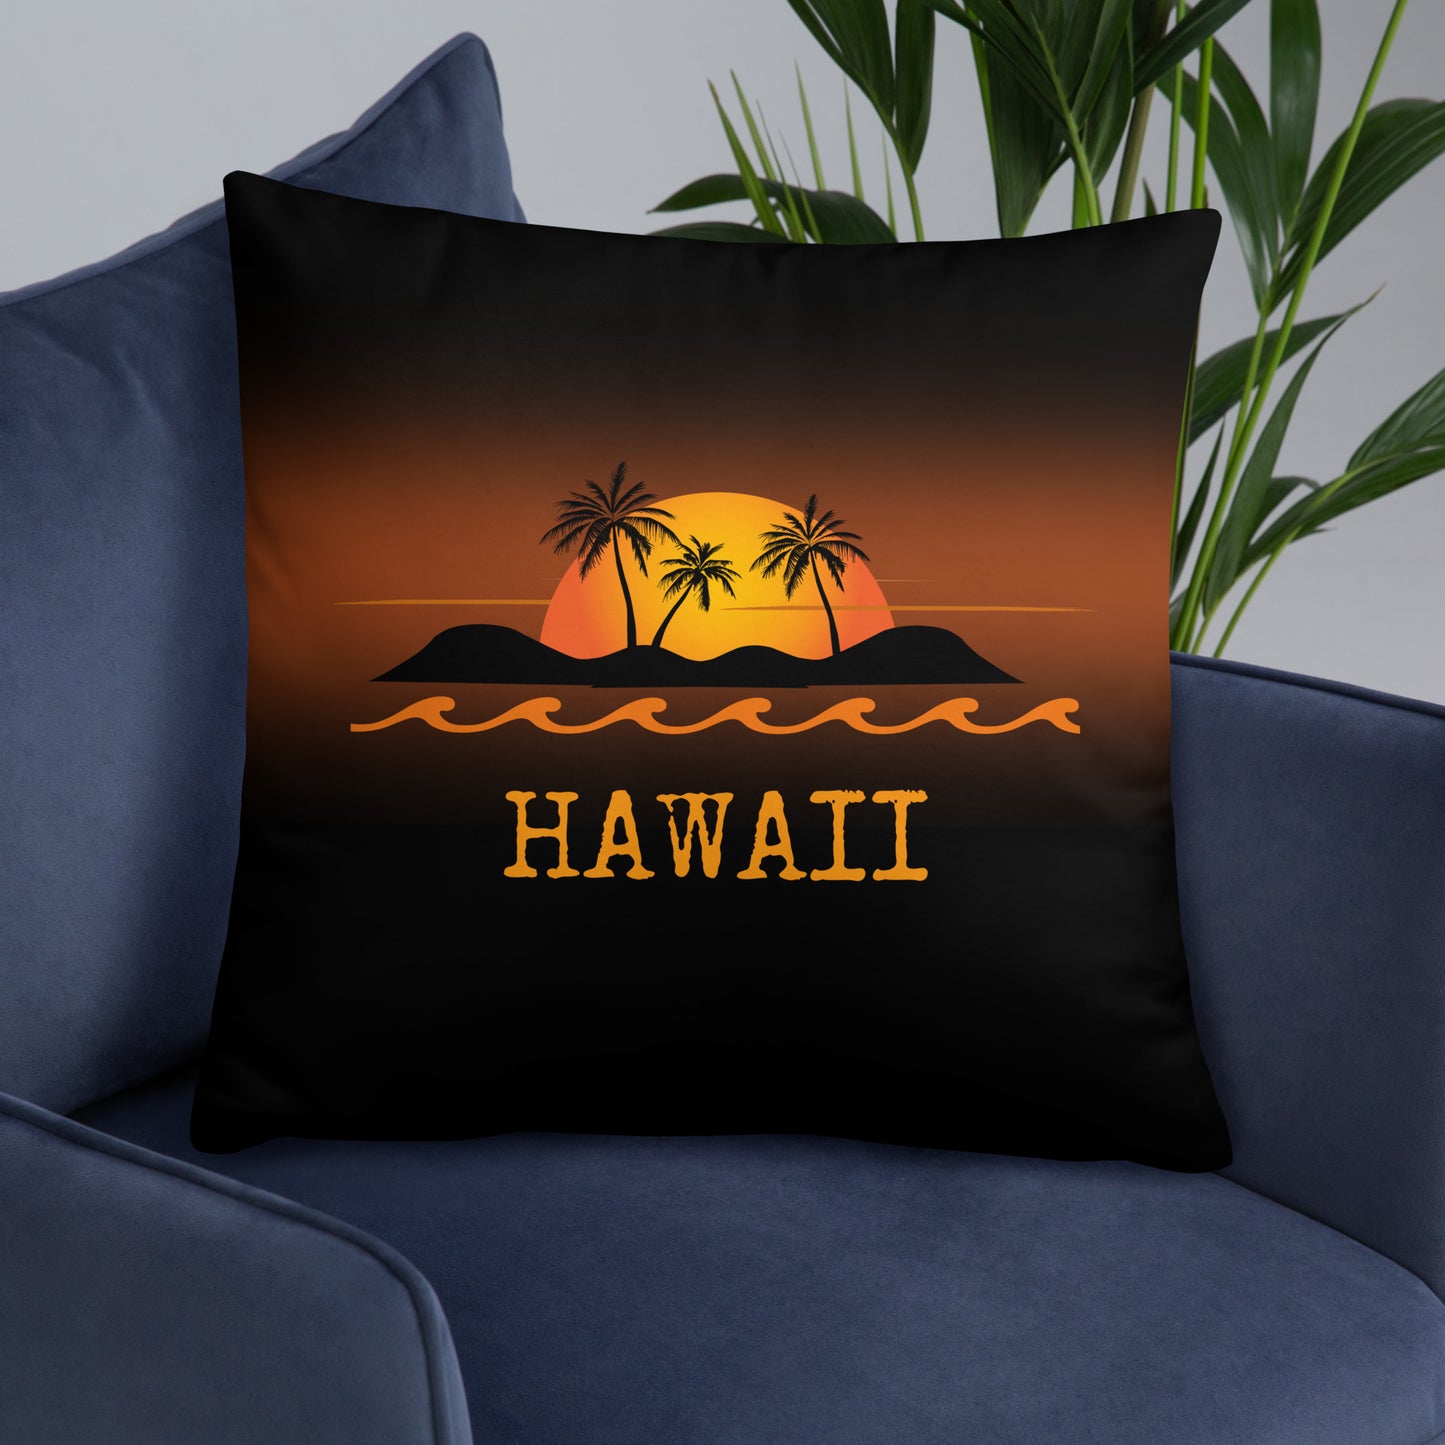 Hawaii Travel Gift #1 | Hawaii Vacation Gift | Hawaii Travel Souvenir | Hawaii Vacation Memento | Hawaii Home Décor | Keepsake Souvenir Gift | Travel Vacation Gift | Hawaii United States Gift